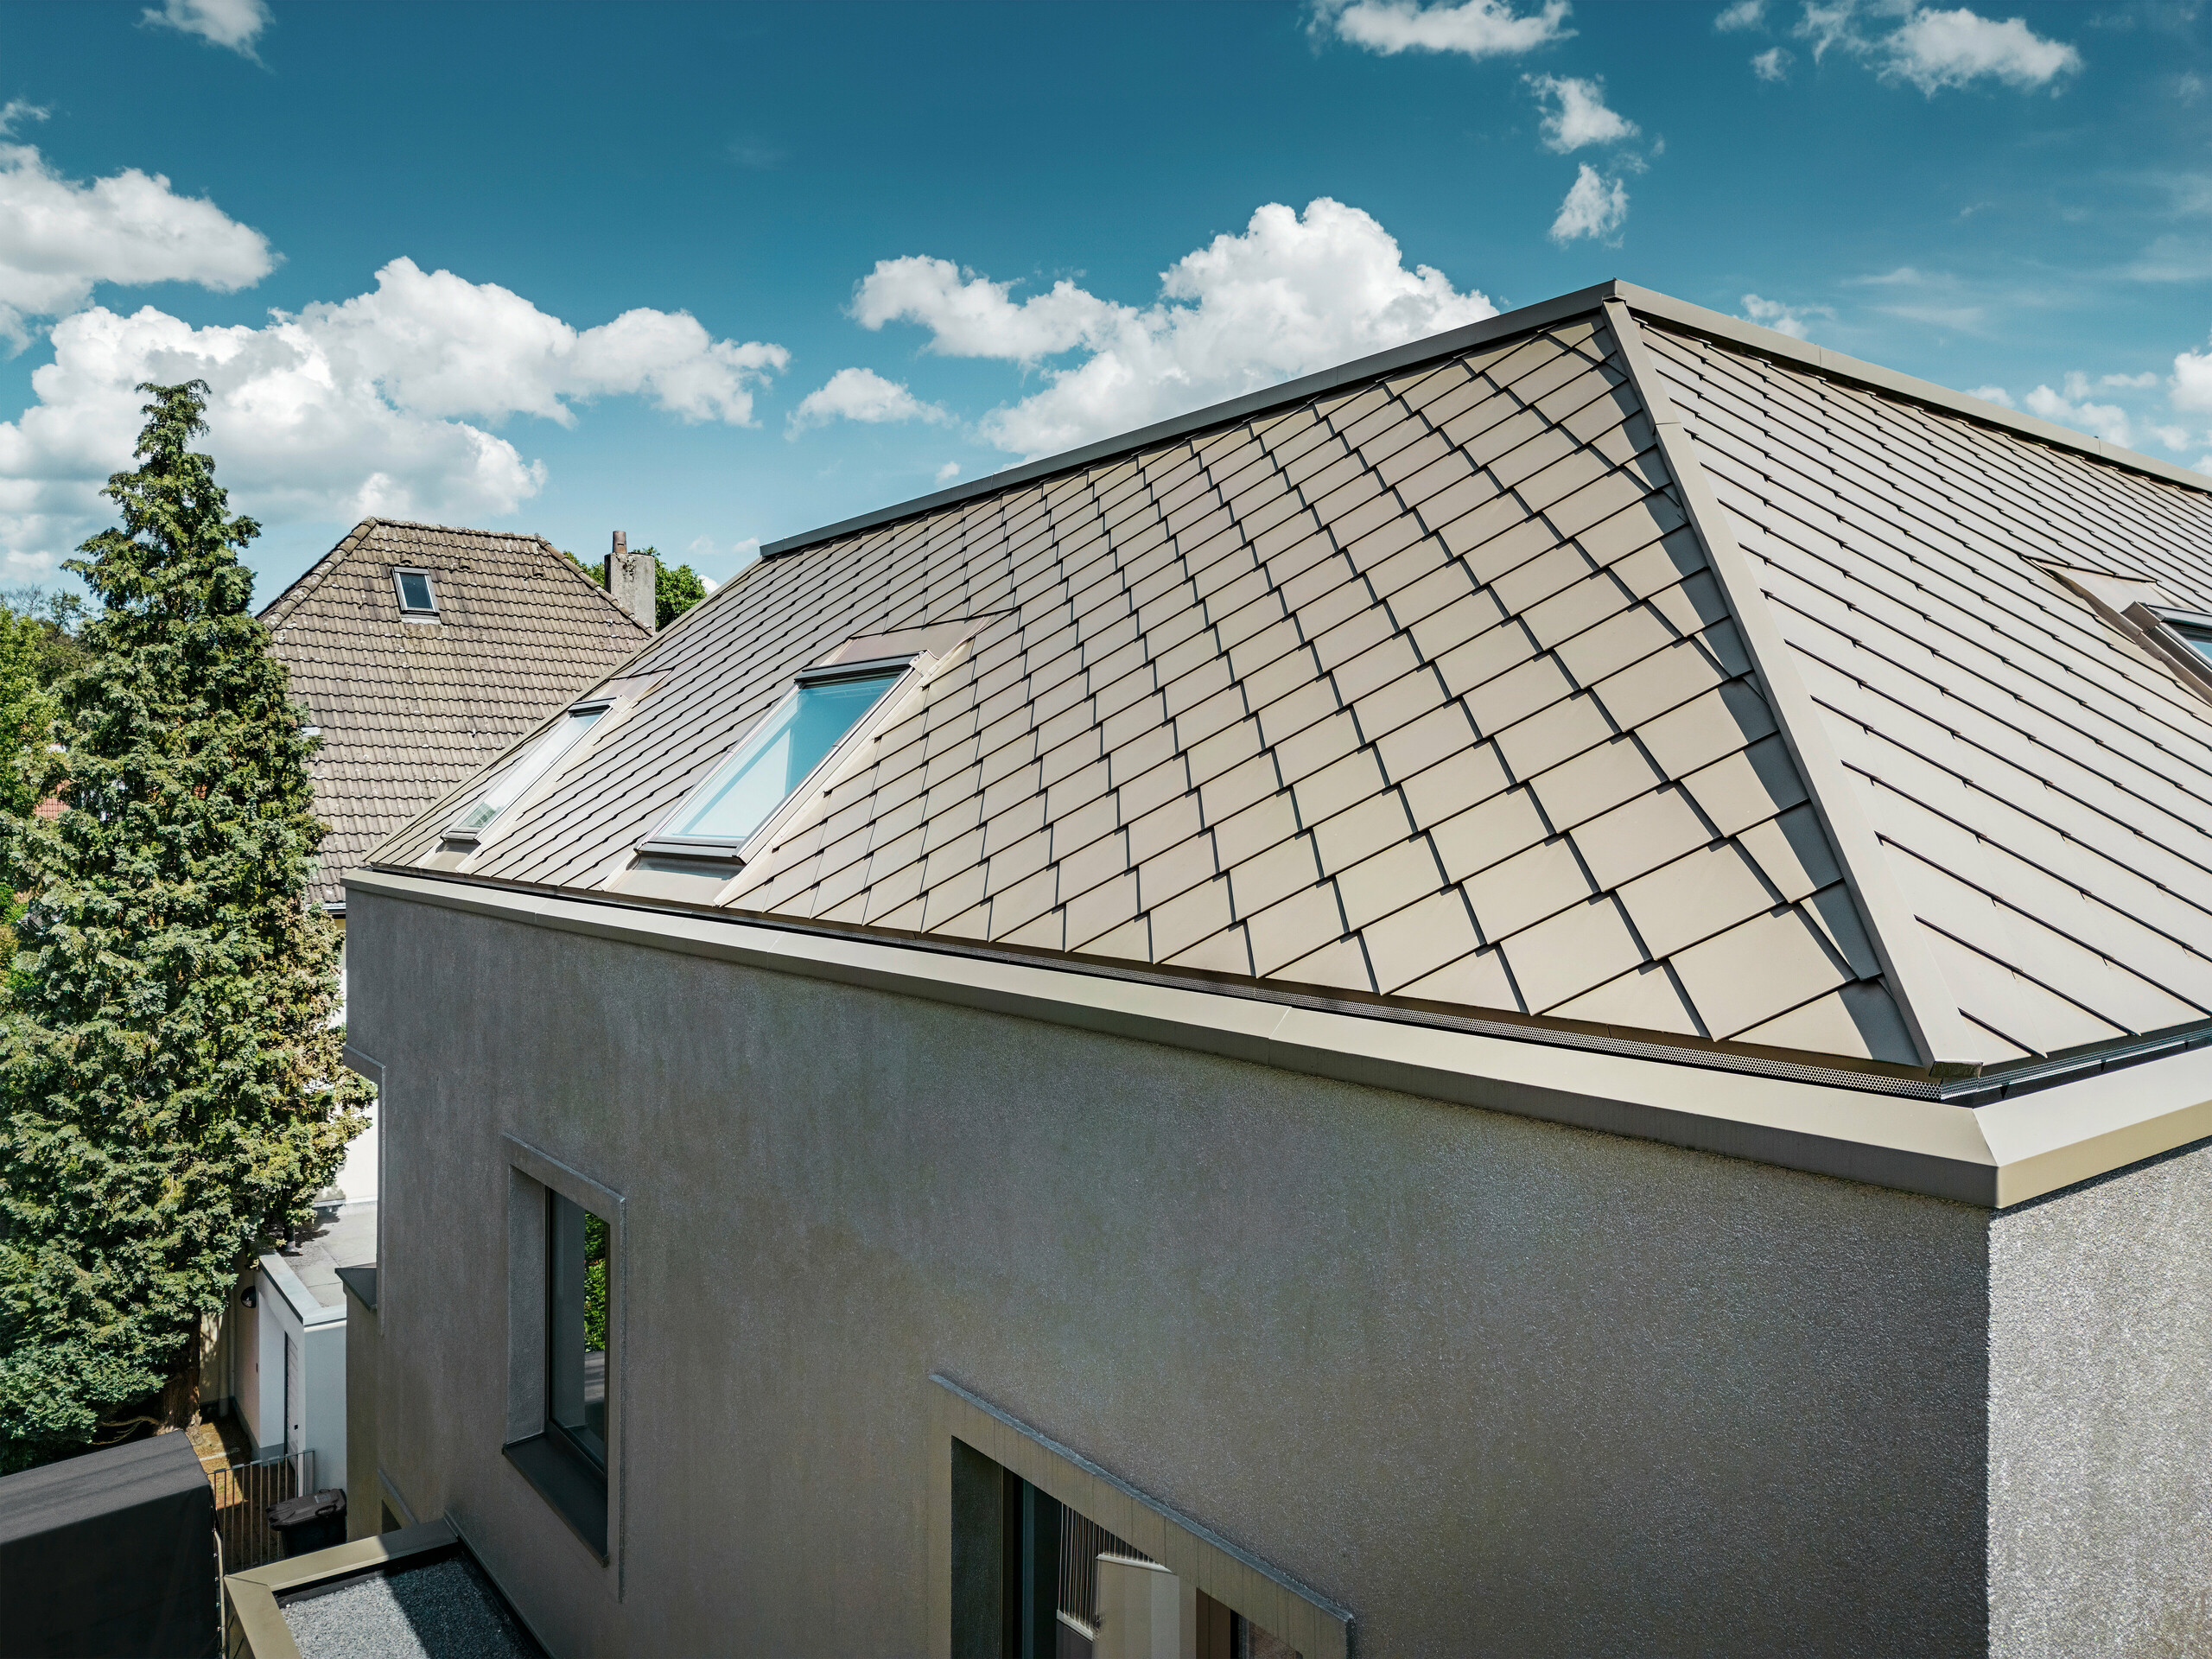 Detailní záběr na valbovou střechu moderního rodinného domu s hliníkovým střešním pláštěm v bronzové barvě od PREFA. Konstrukce střechy vykazuje vysoce kvalitní zpracování s integrovanými světlíky, které poskytují dodatečné přirozené světlo uvnitř. Jasné linie a lesklý povrch hliníkových střešních panelů zdůrazňují moderní a elegantní design domu.